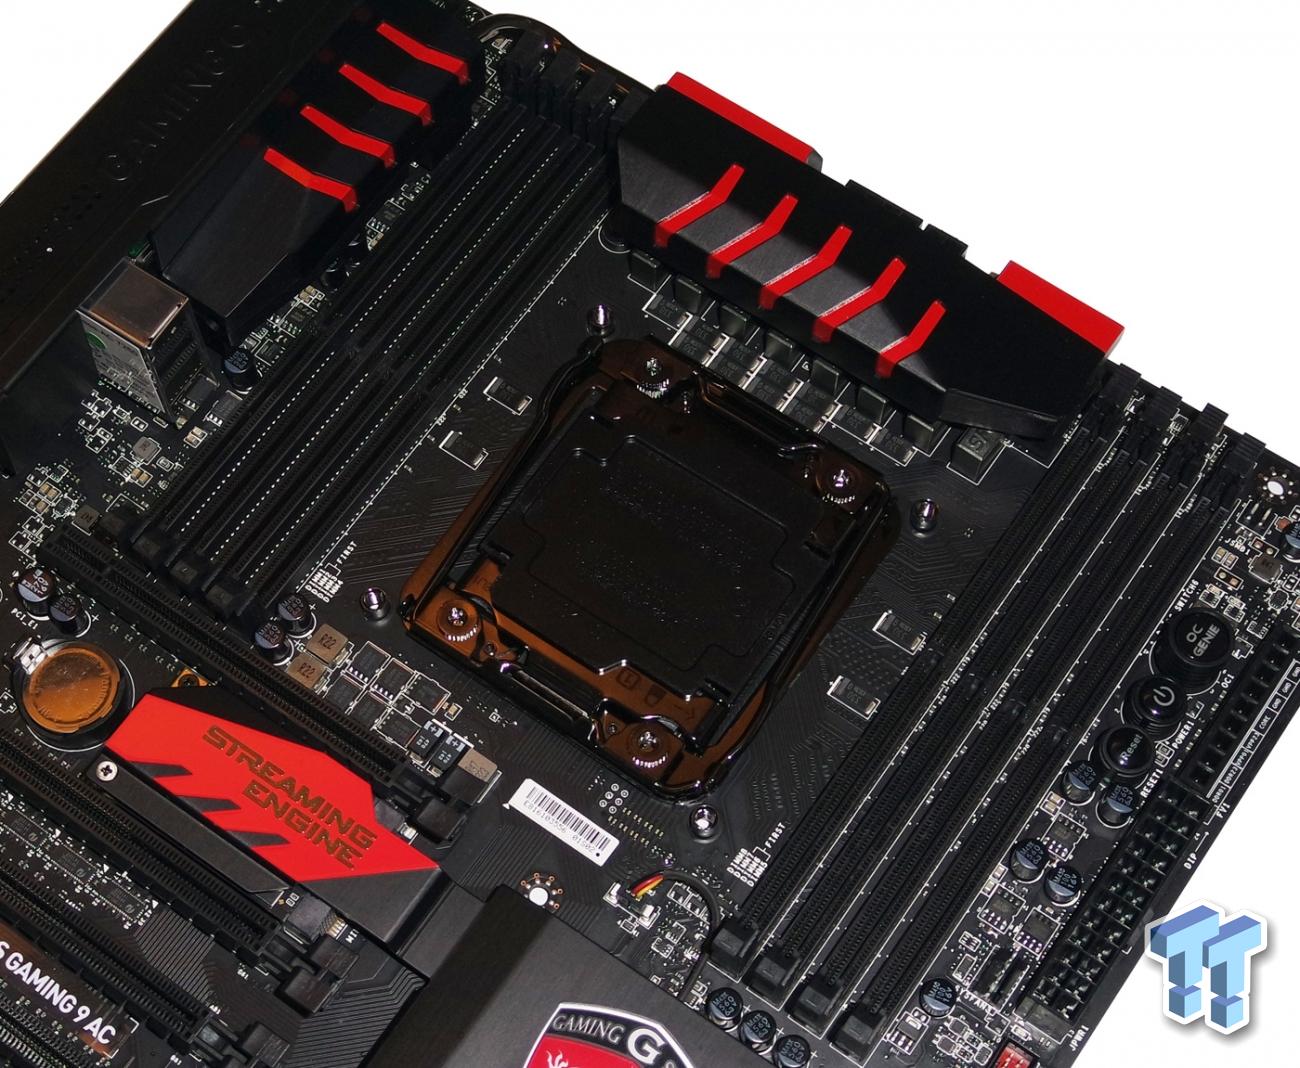 MSI X99S GAMING 9 AC (Intel X99) Motherboard Review | TweakTown